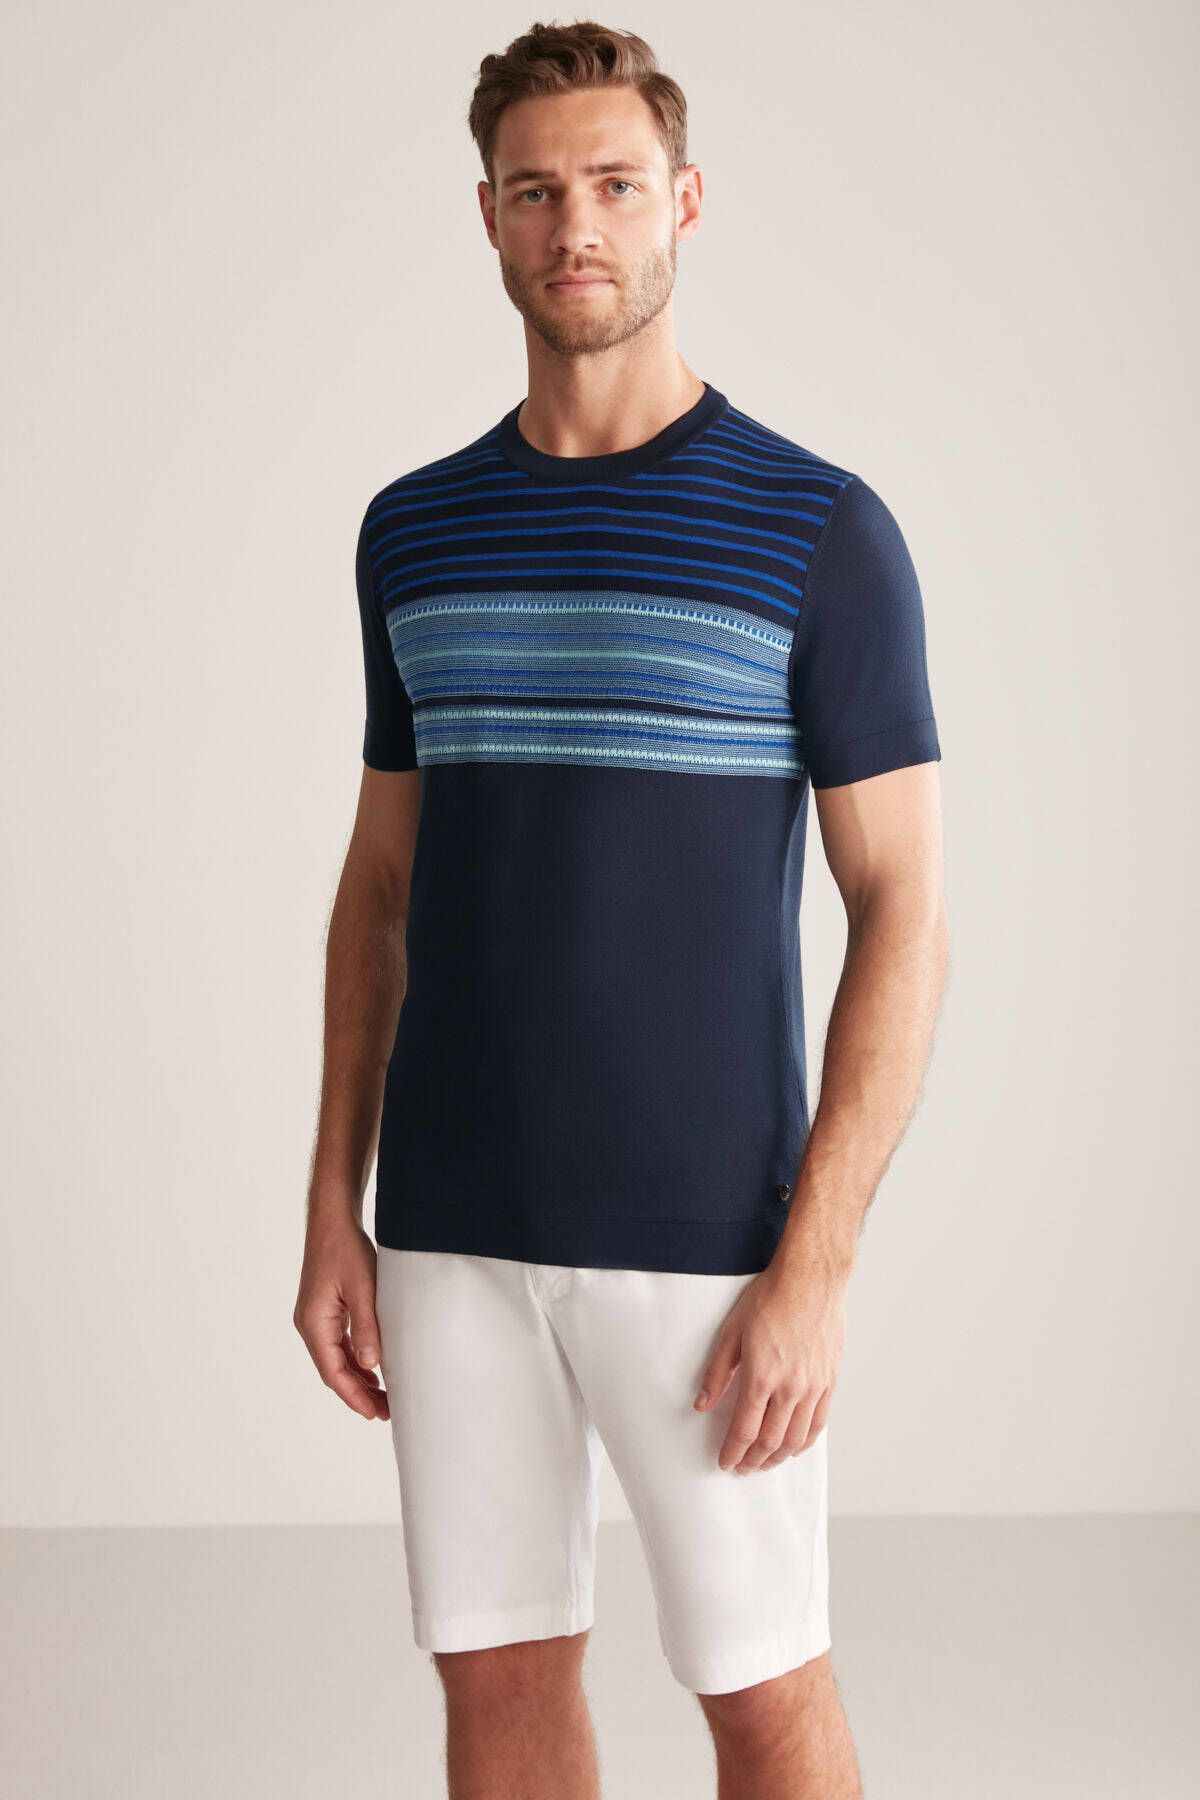 Hemington İpek Pamuk Karışım Çizgi Desenli Lacivert Triko T-Shirt